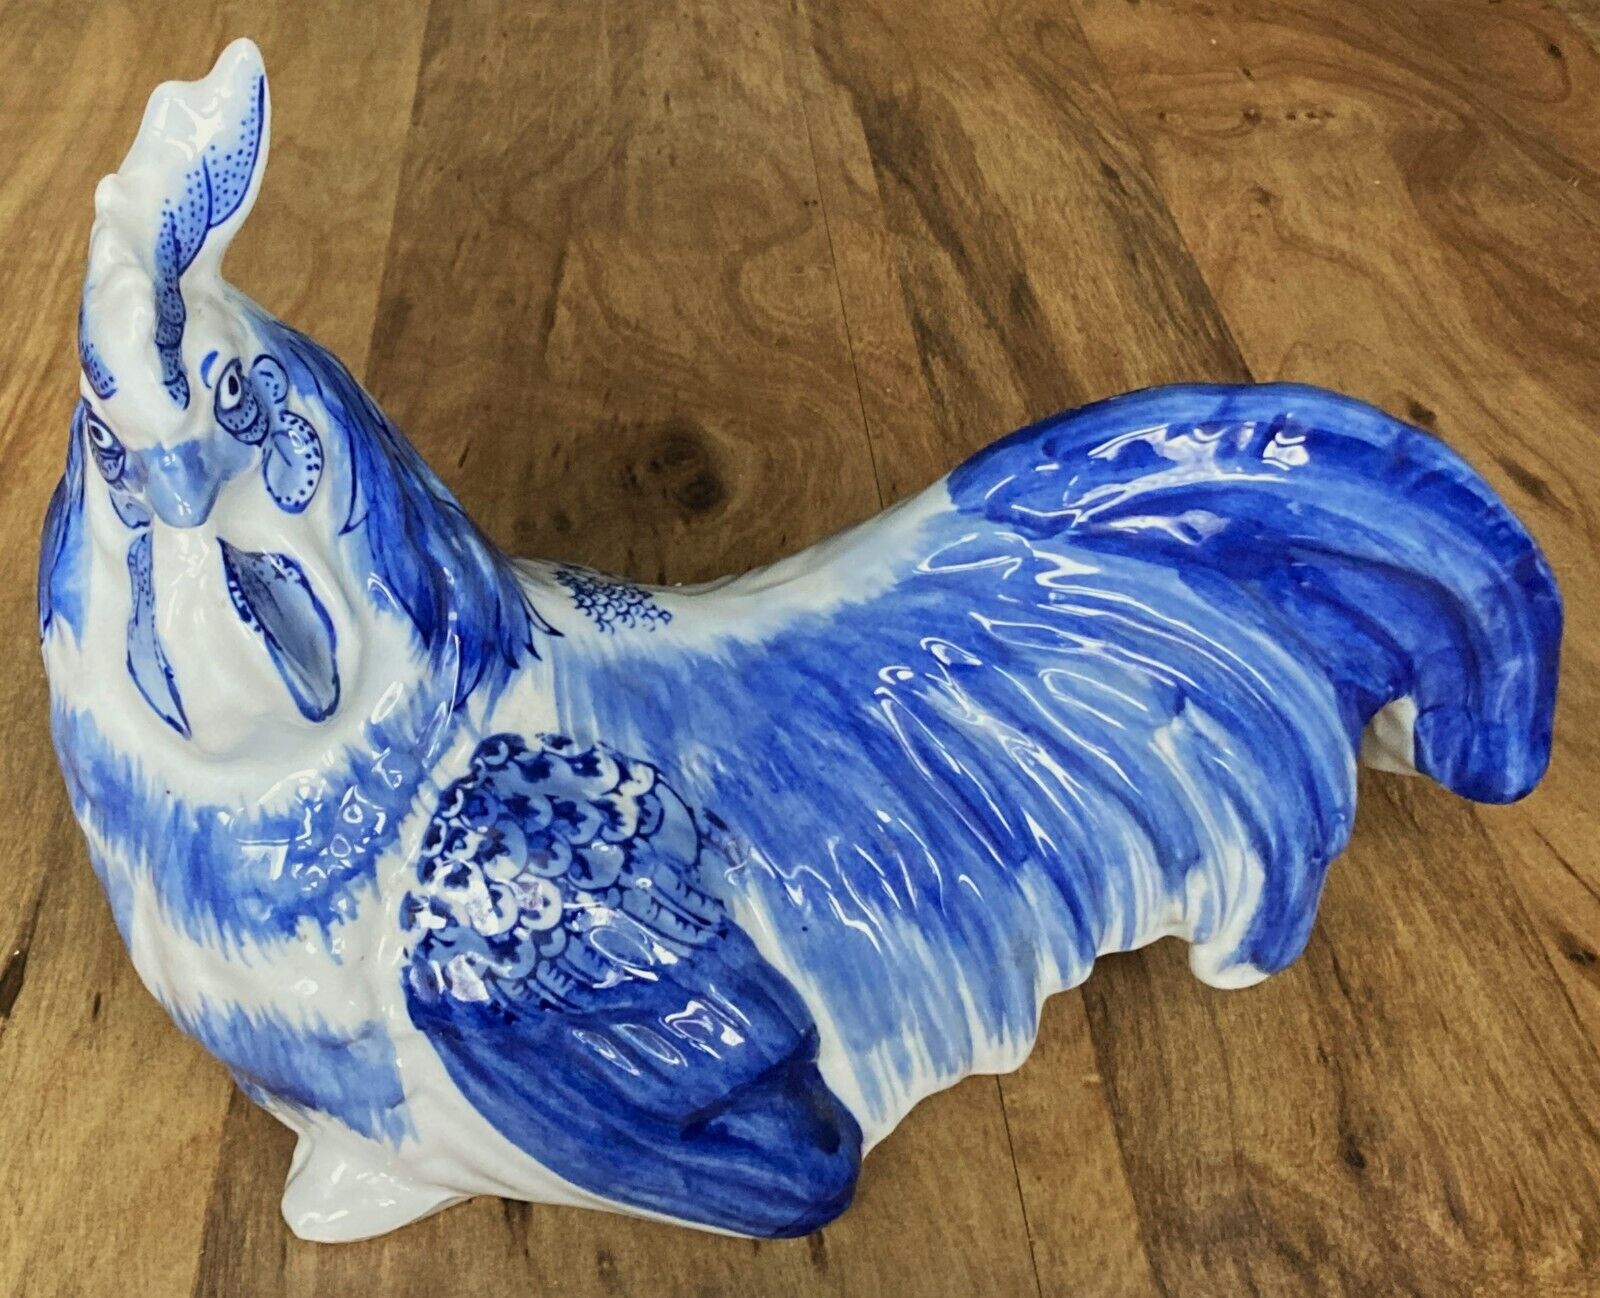 Vintage Cobalt Blue & White Rooster Delft Style Bird Ceramic Porcelain Figurine